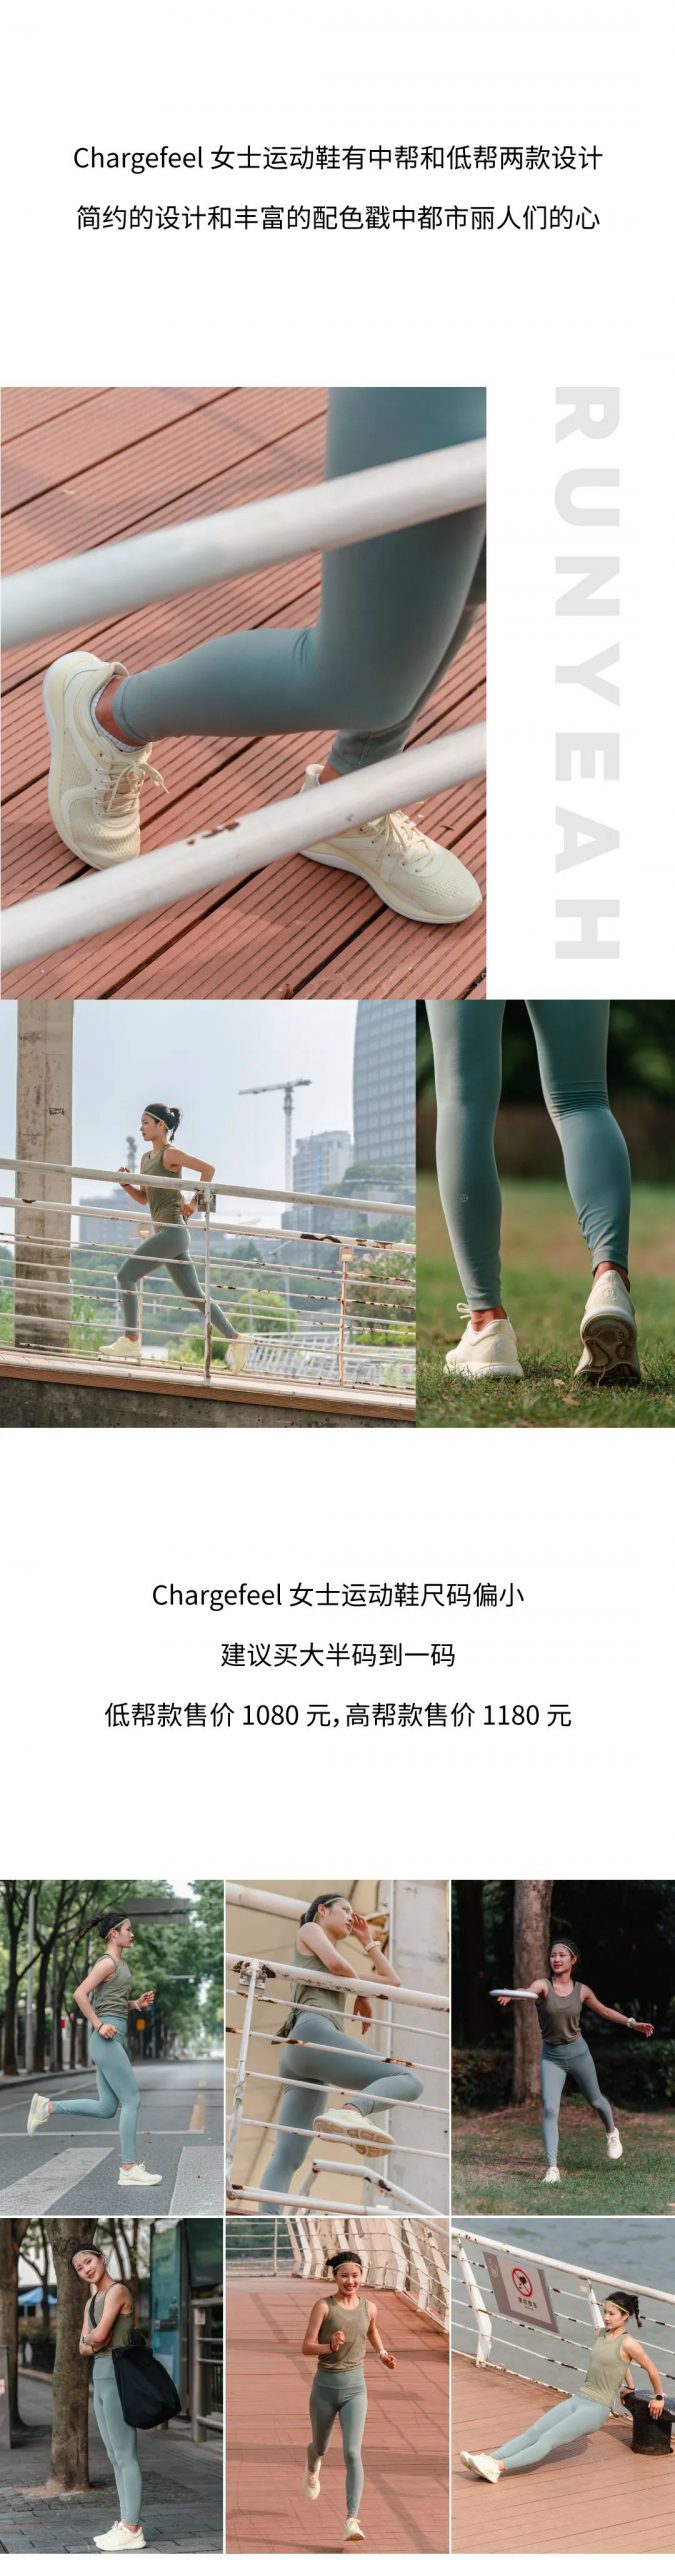 开箱 Vol22022｜ lululemon 第二款女士运动鞋 Chargefeel 给她训练自由